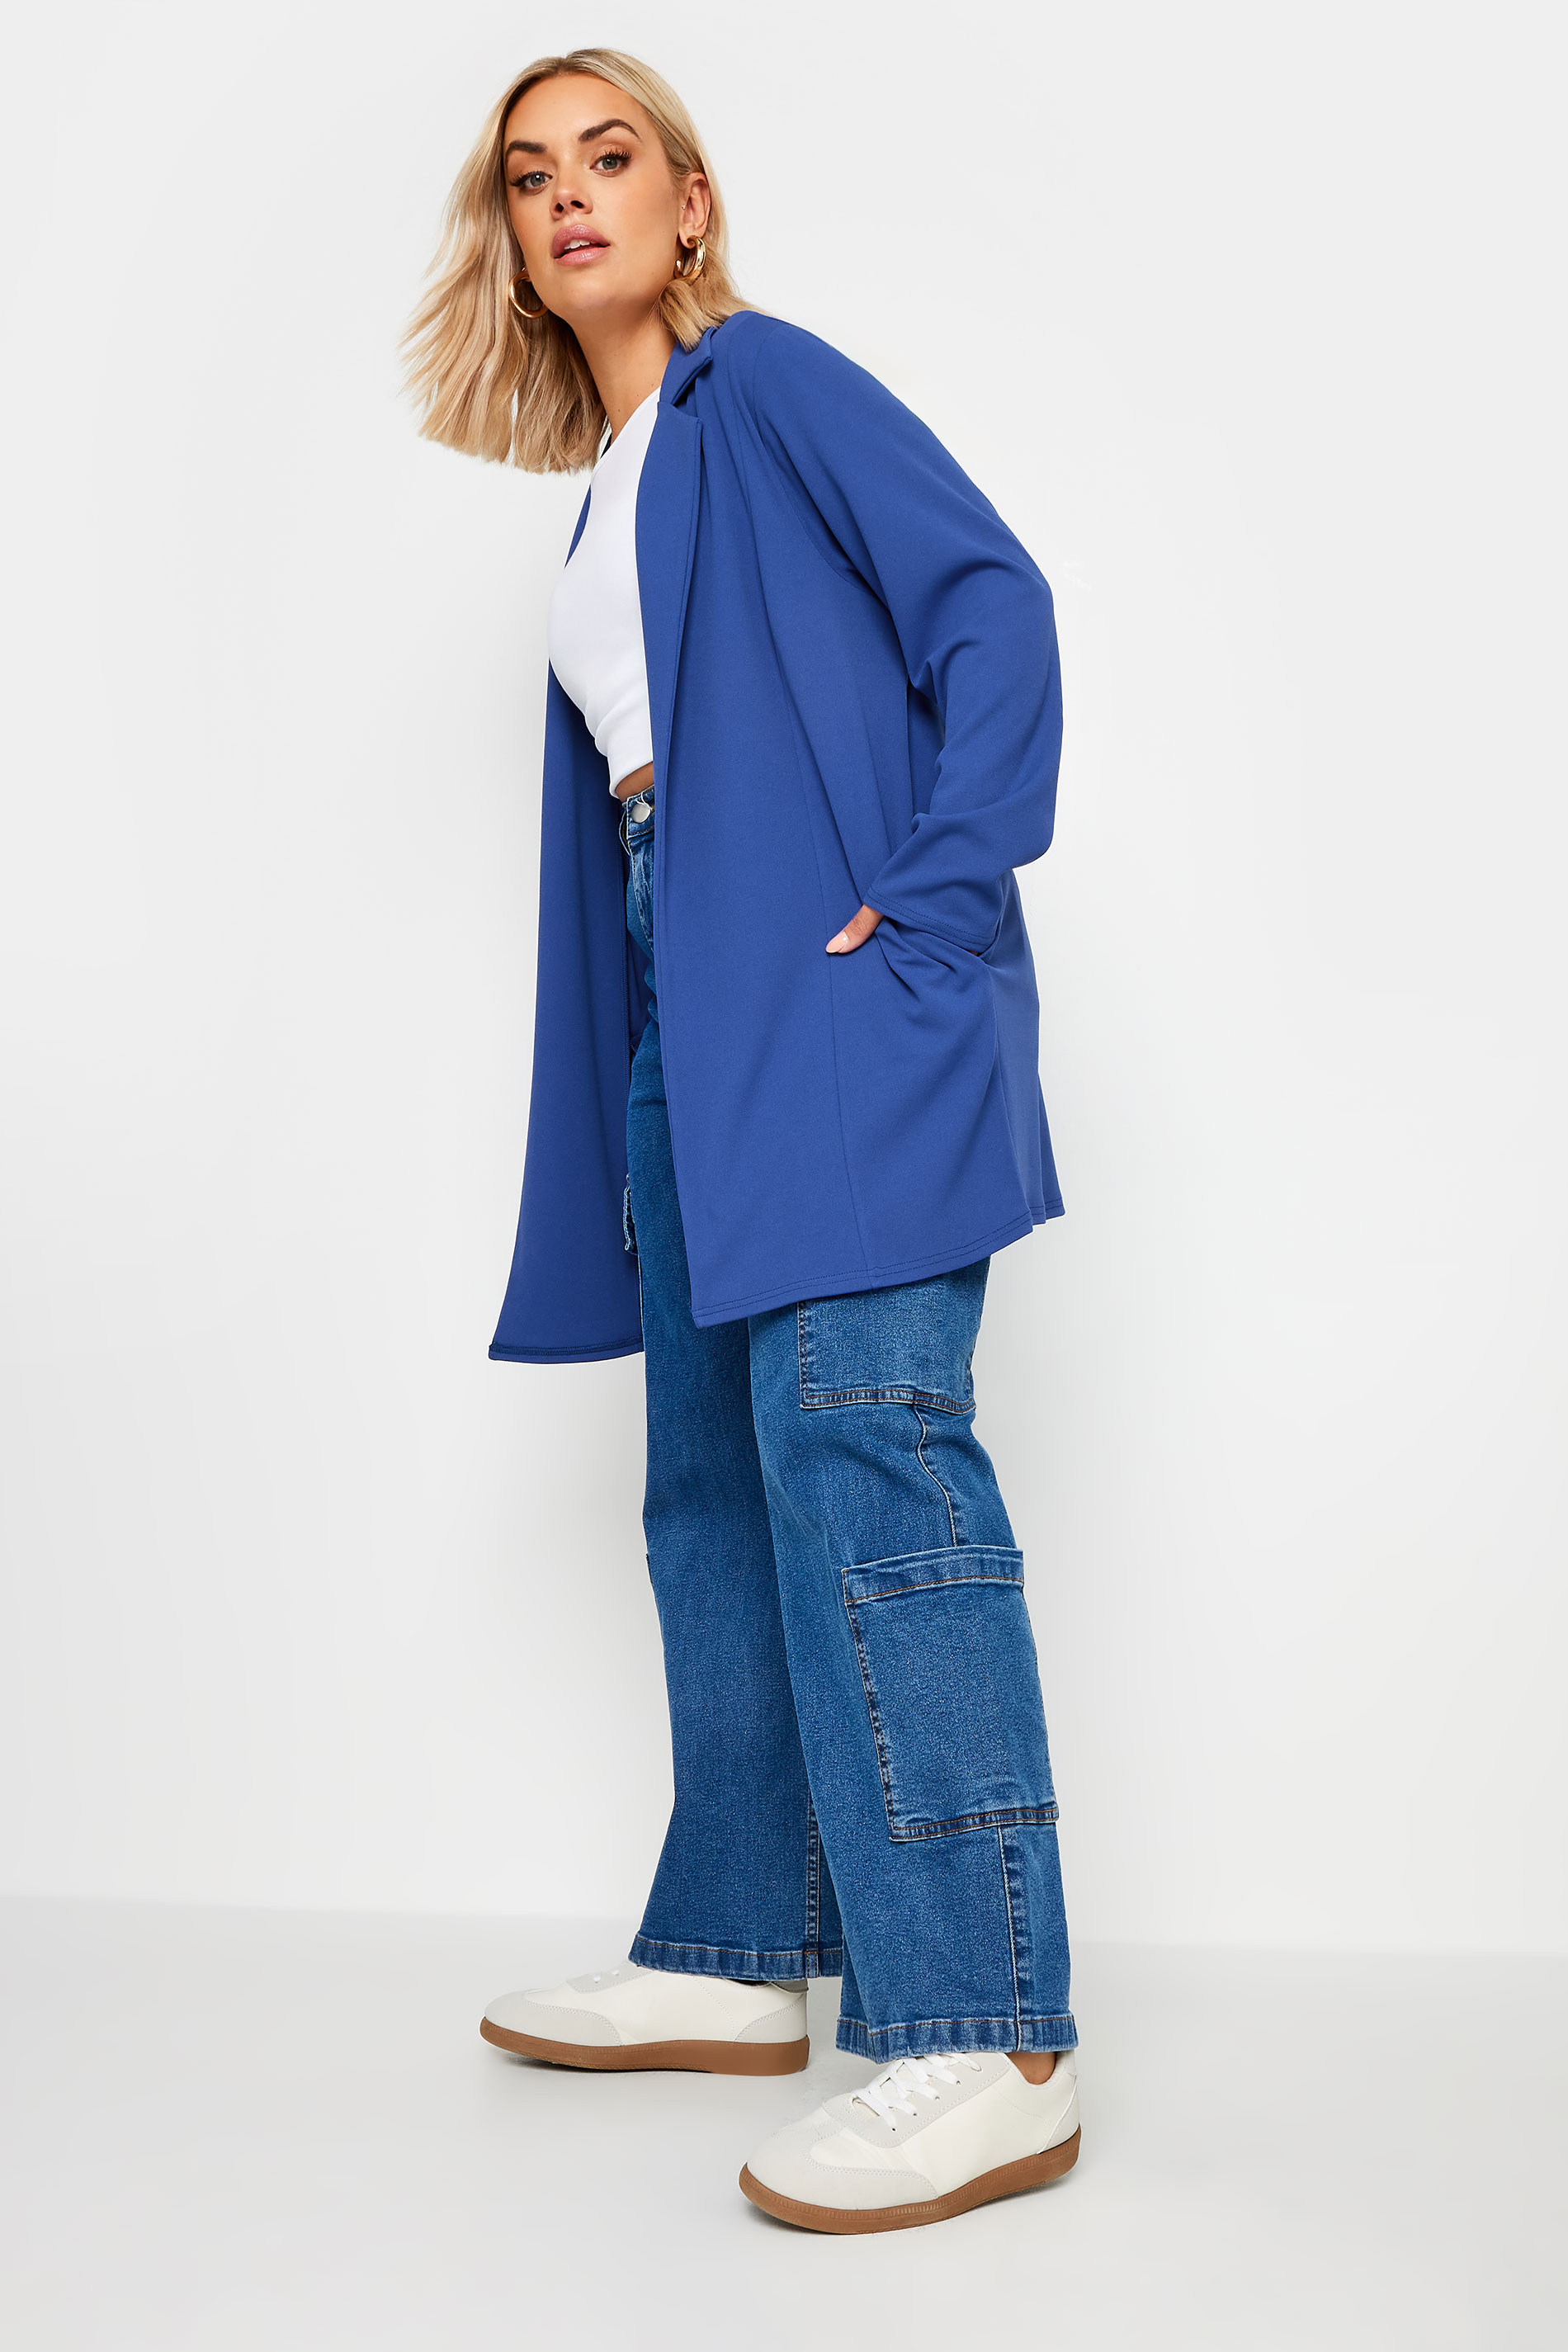 YOURS Curve Plus Size Cobalt Blue Scuba Blazer | Yours Clothing 2